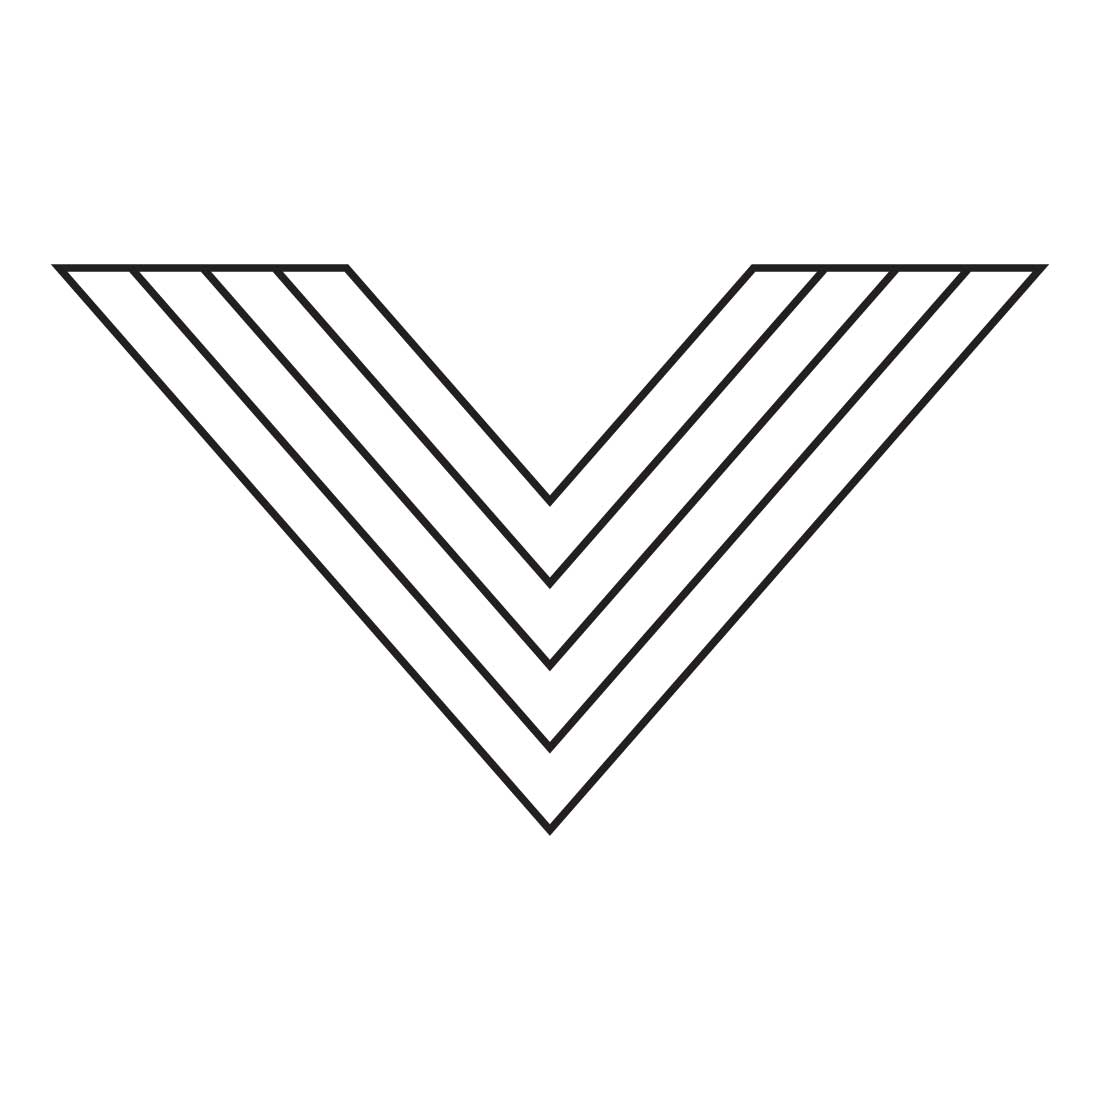 V Letter Creative Logo Bundle cover image.